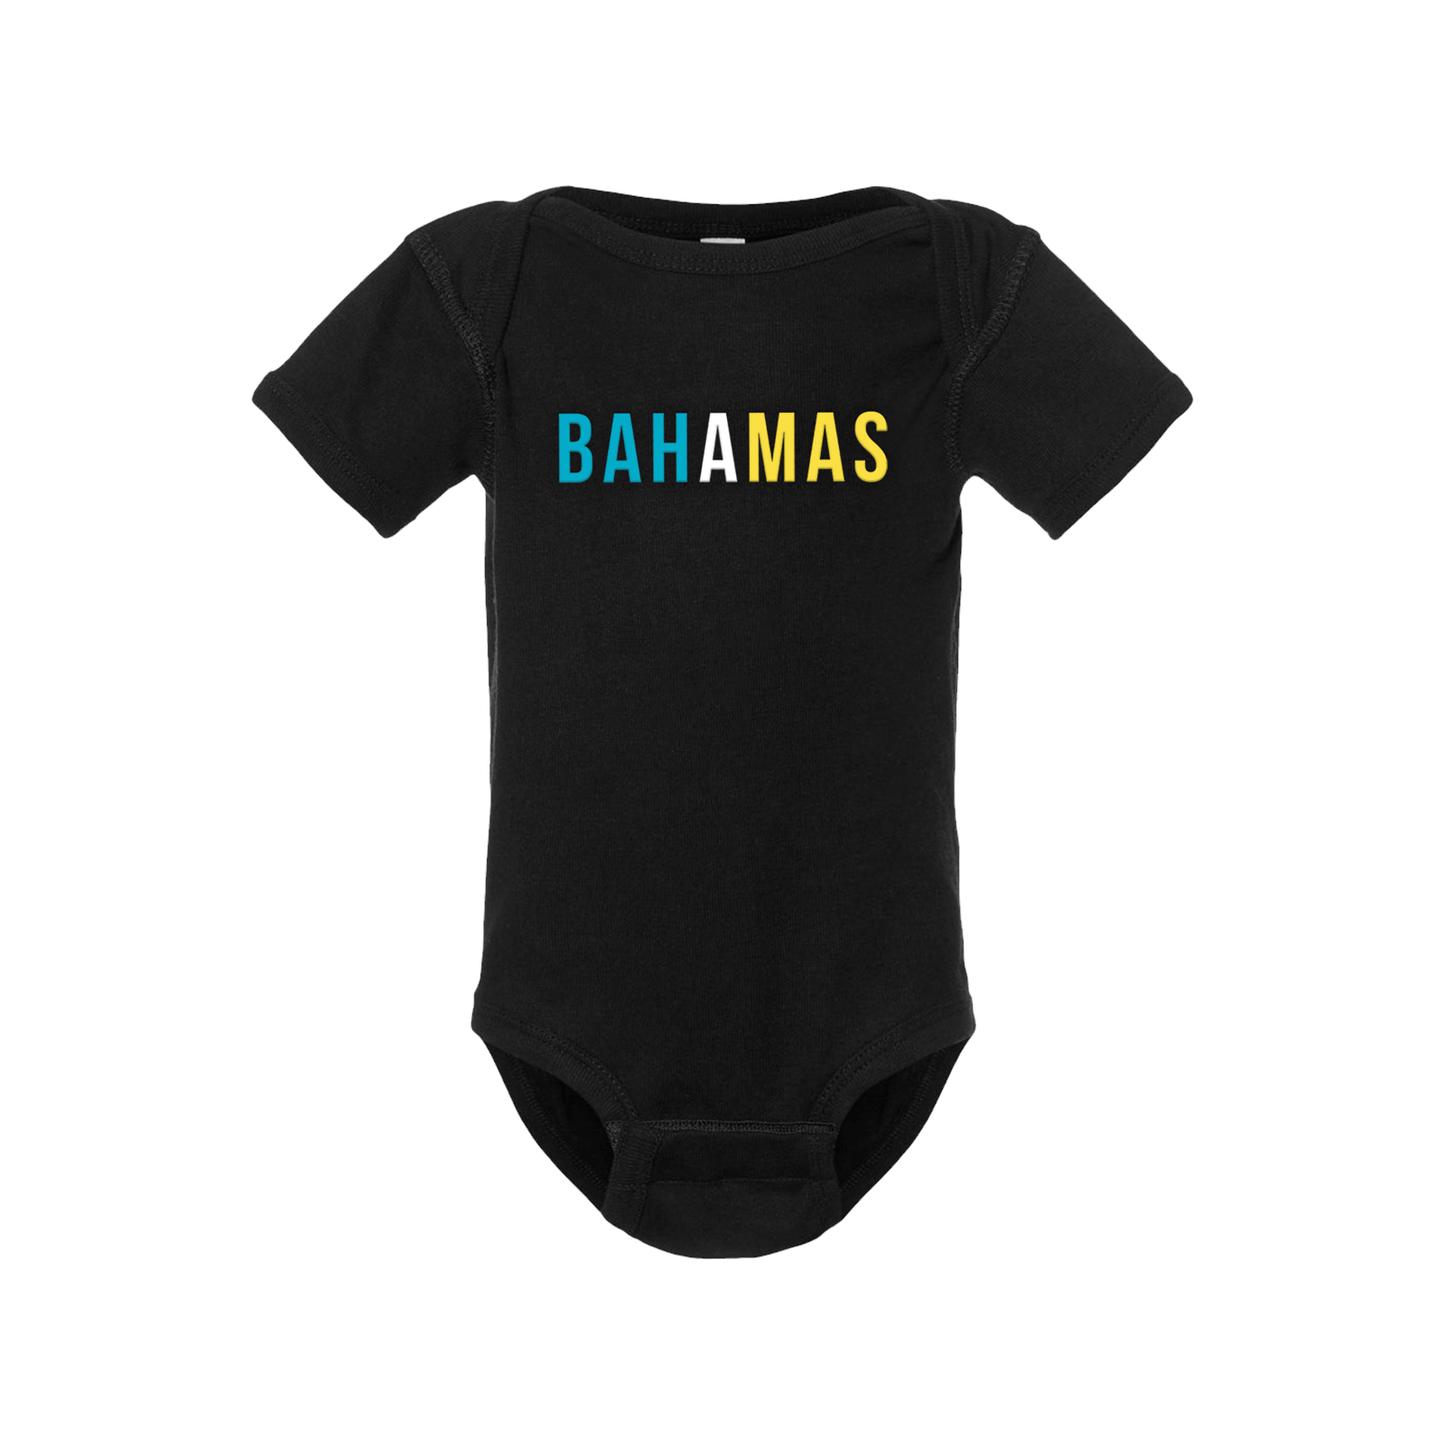 Bahamas Short Sleeve Onesie - Babies & Toddlers